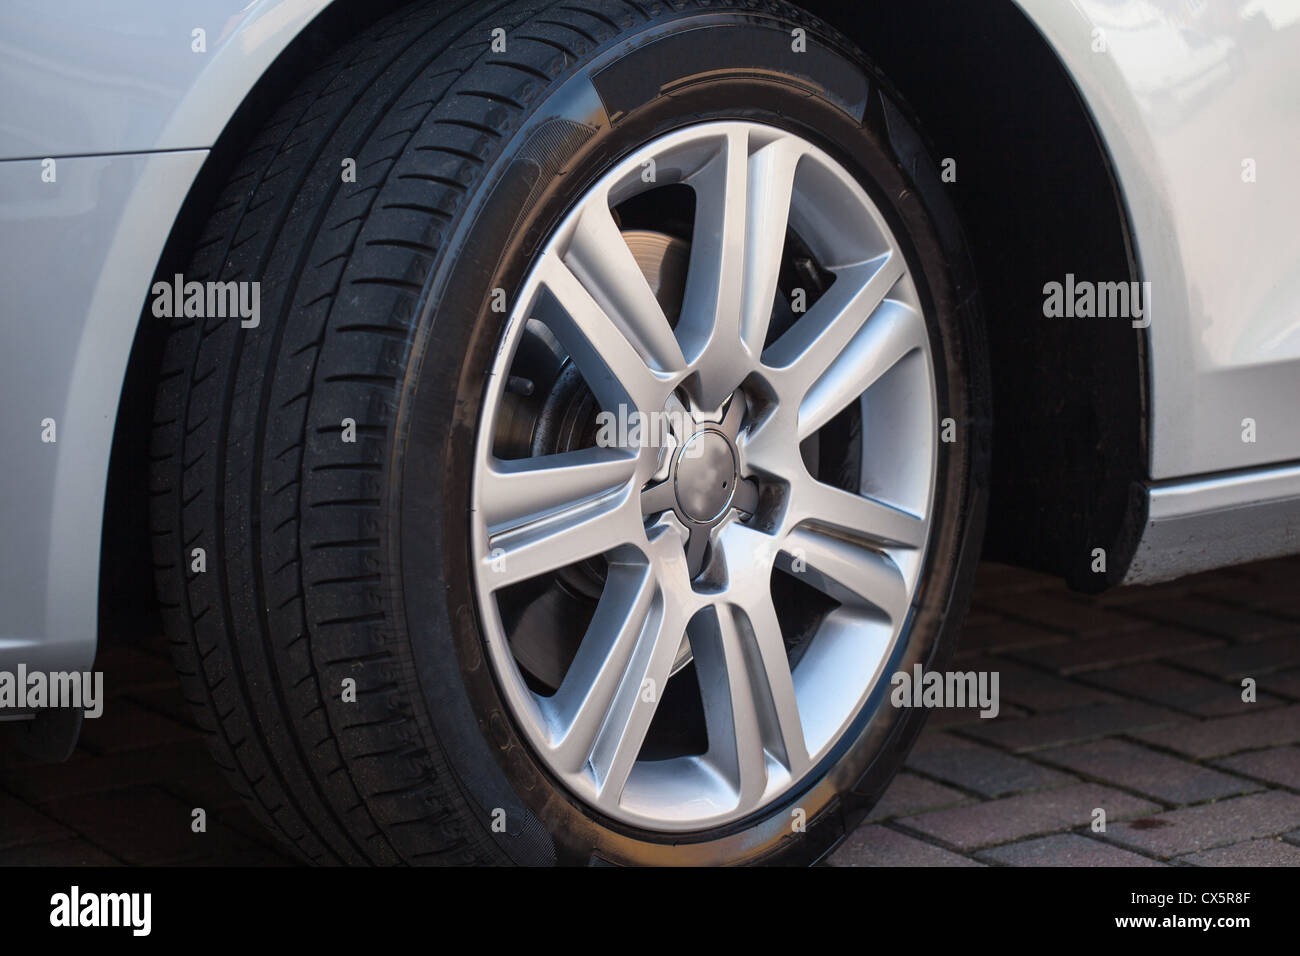 Car wheel on a car Stock Photo